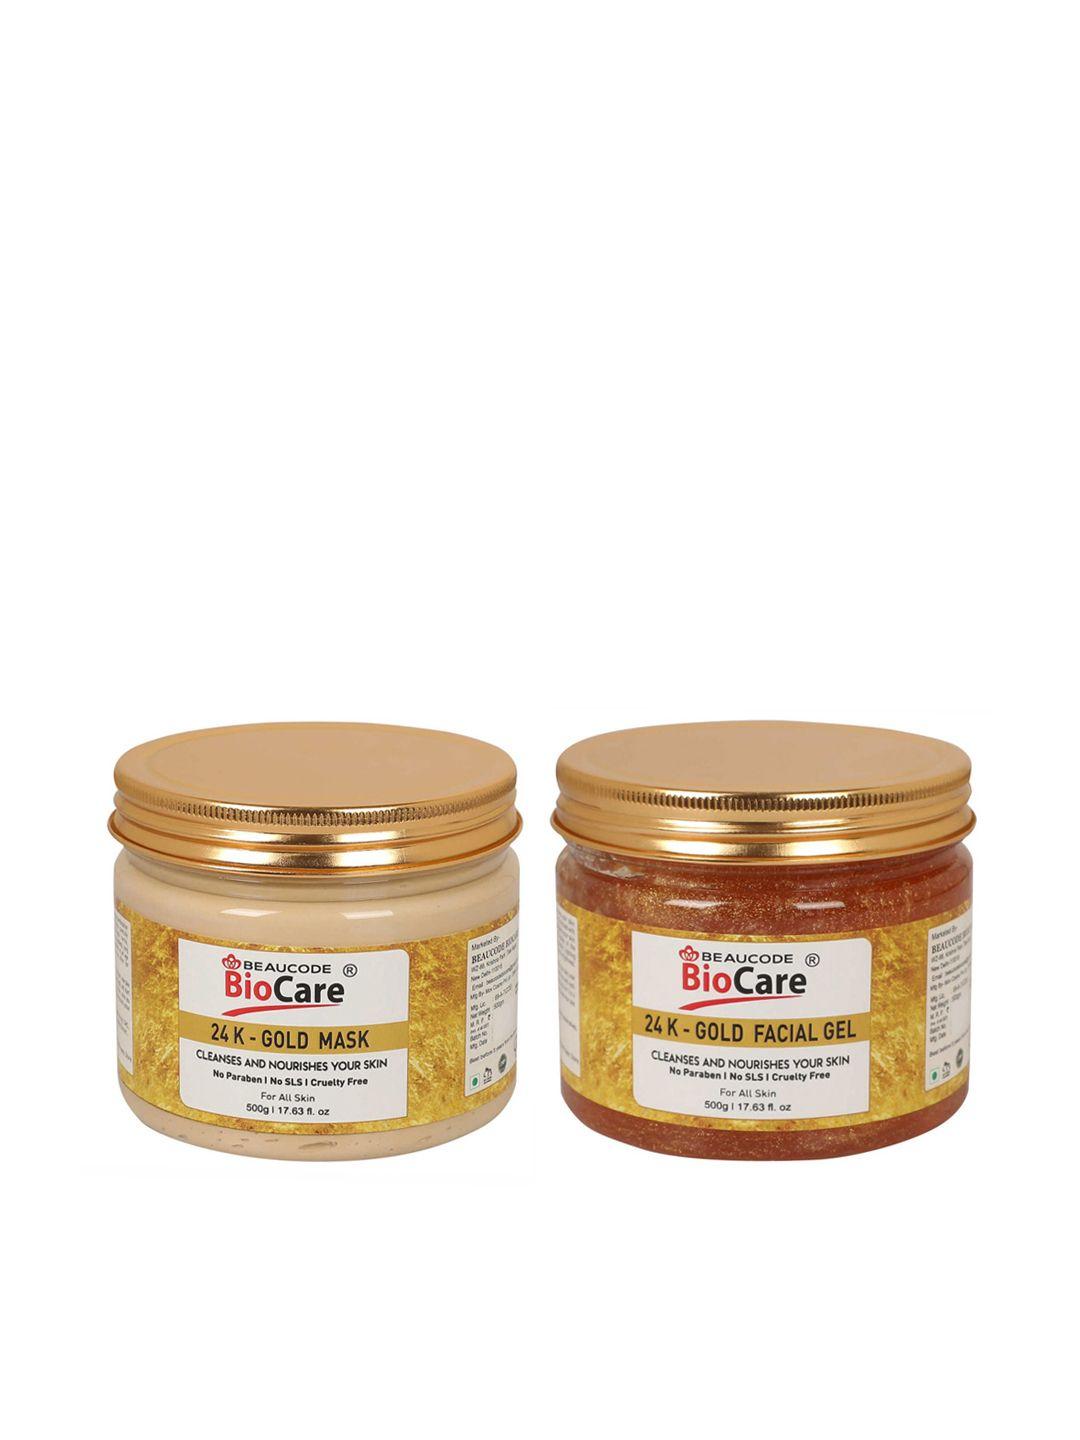 beaucode biocare gold set of 2 24k gold mask & facial gel - 500 g each